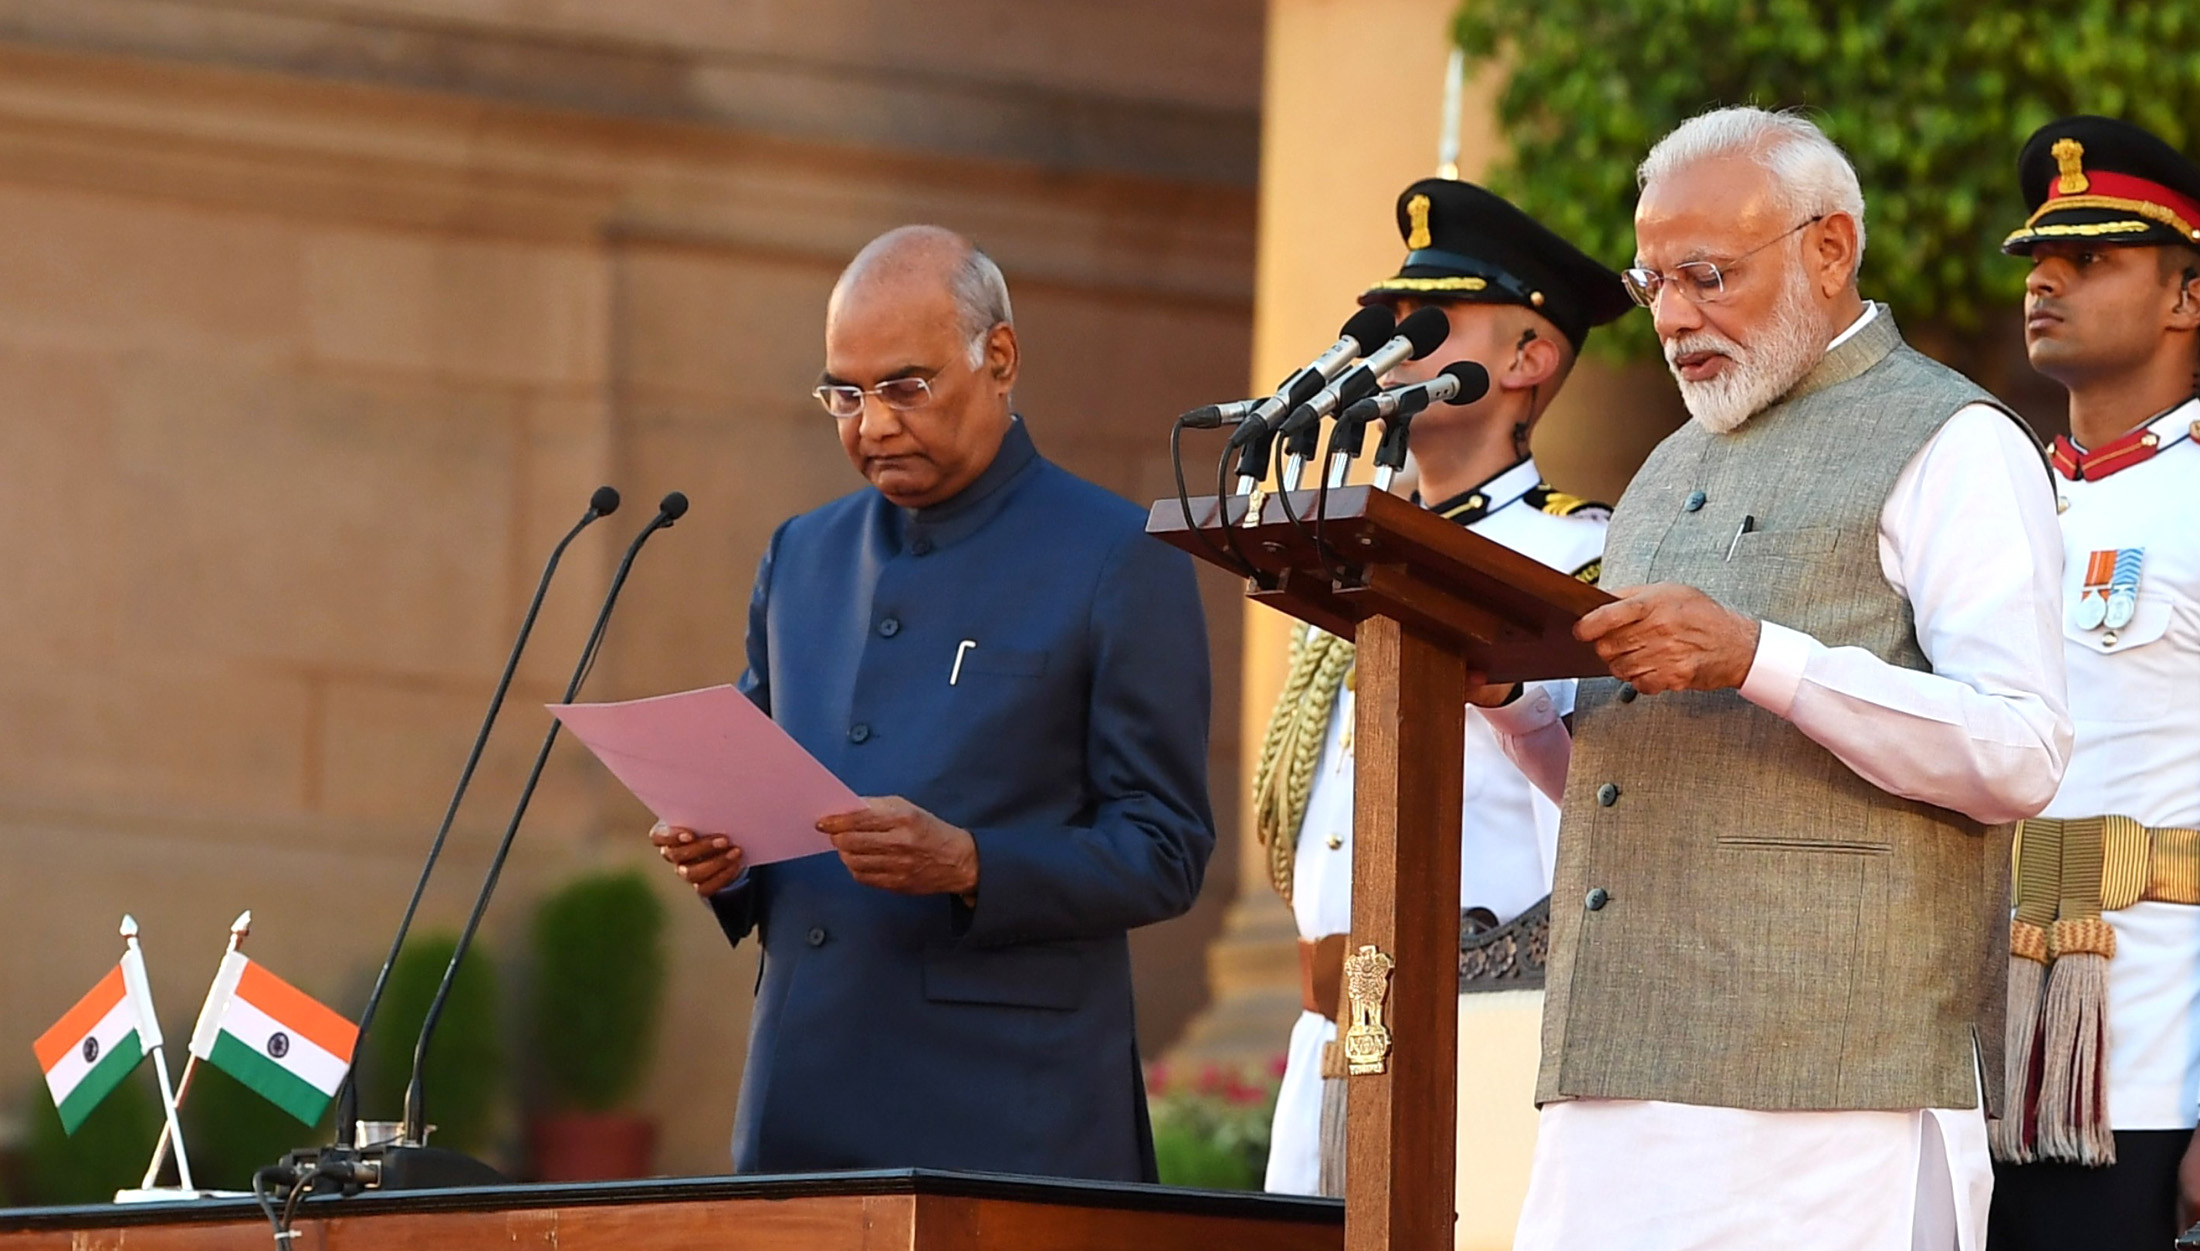 FileThe President, Shri Ram Nath Kovind administering the oath of